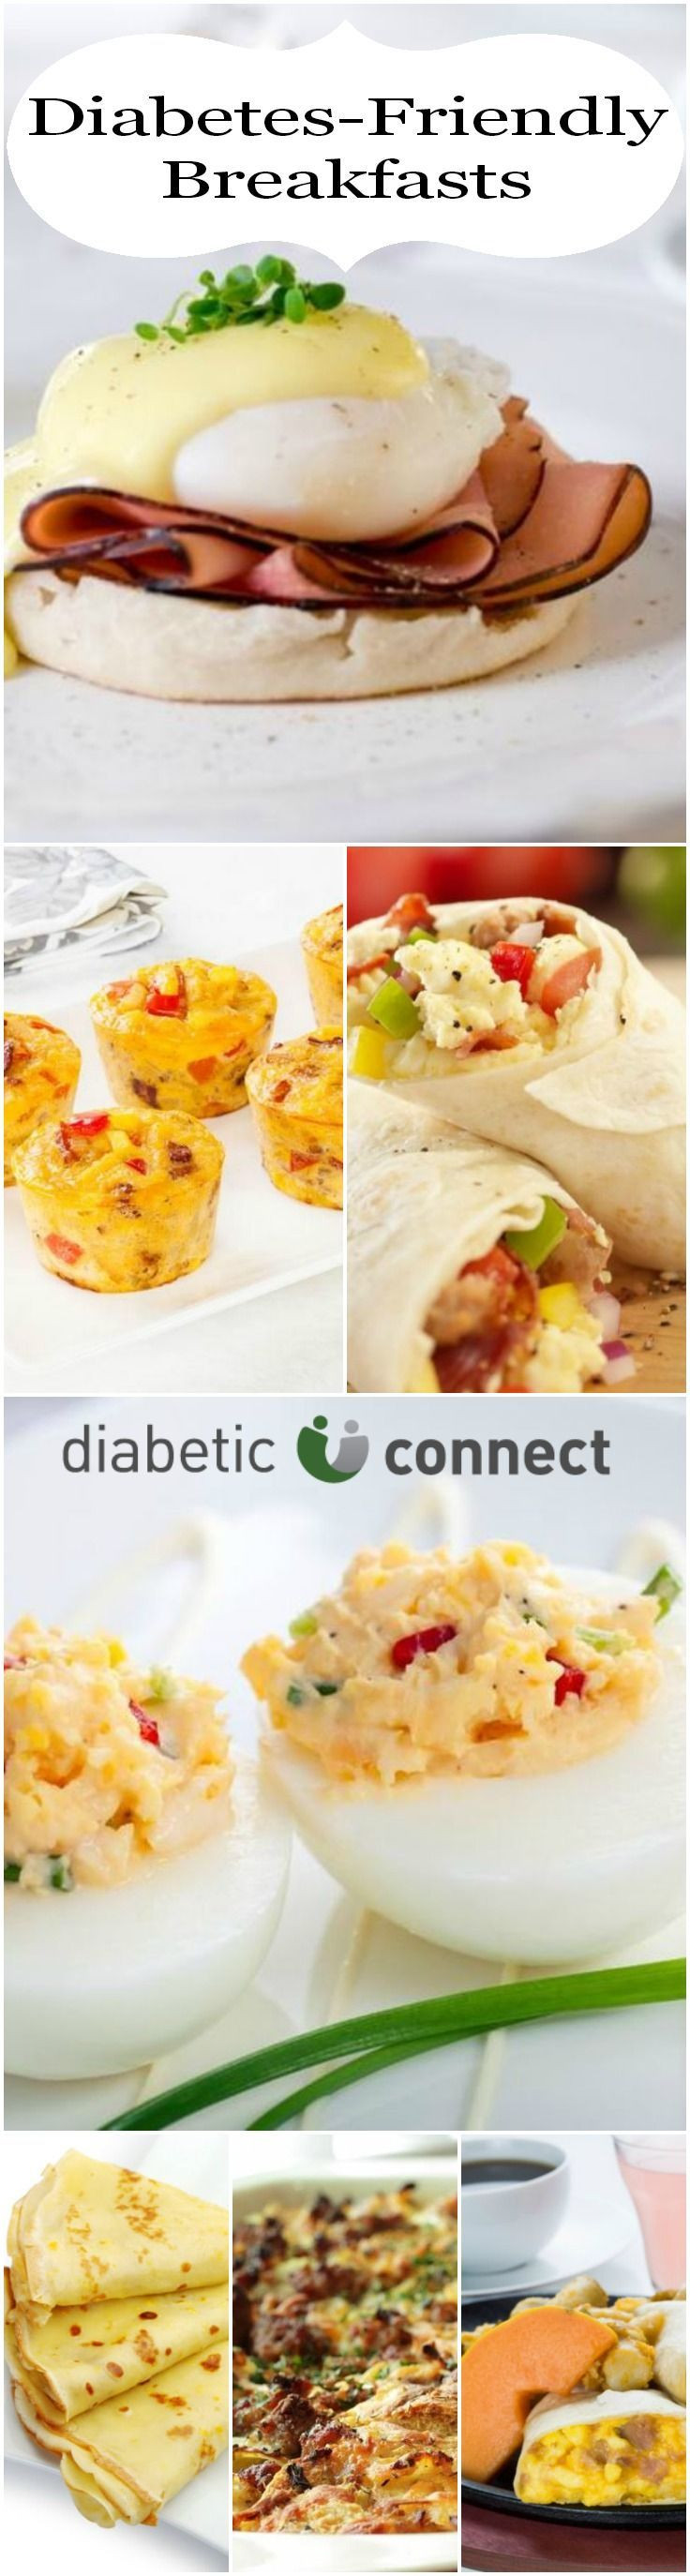 Breakfast Recipes For Diabetics
 Diabetic breakfast ideas